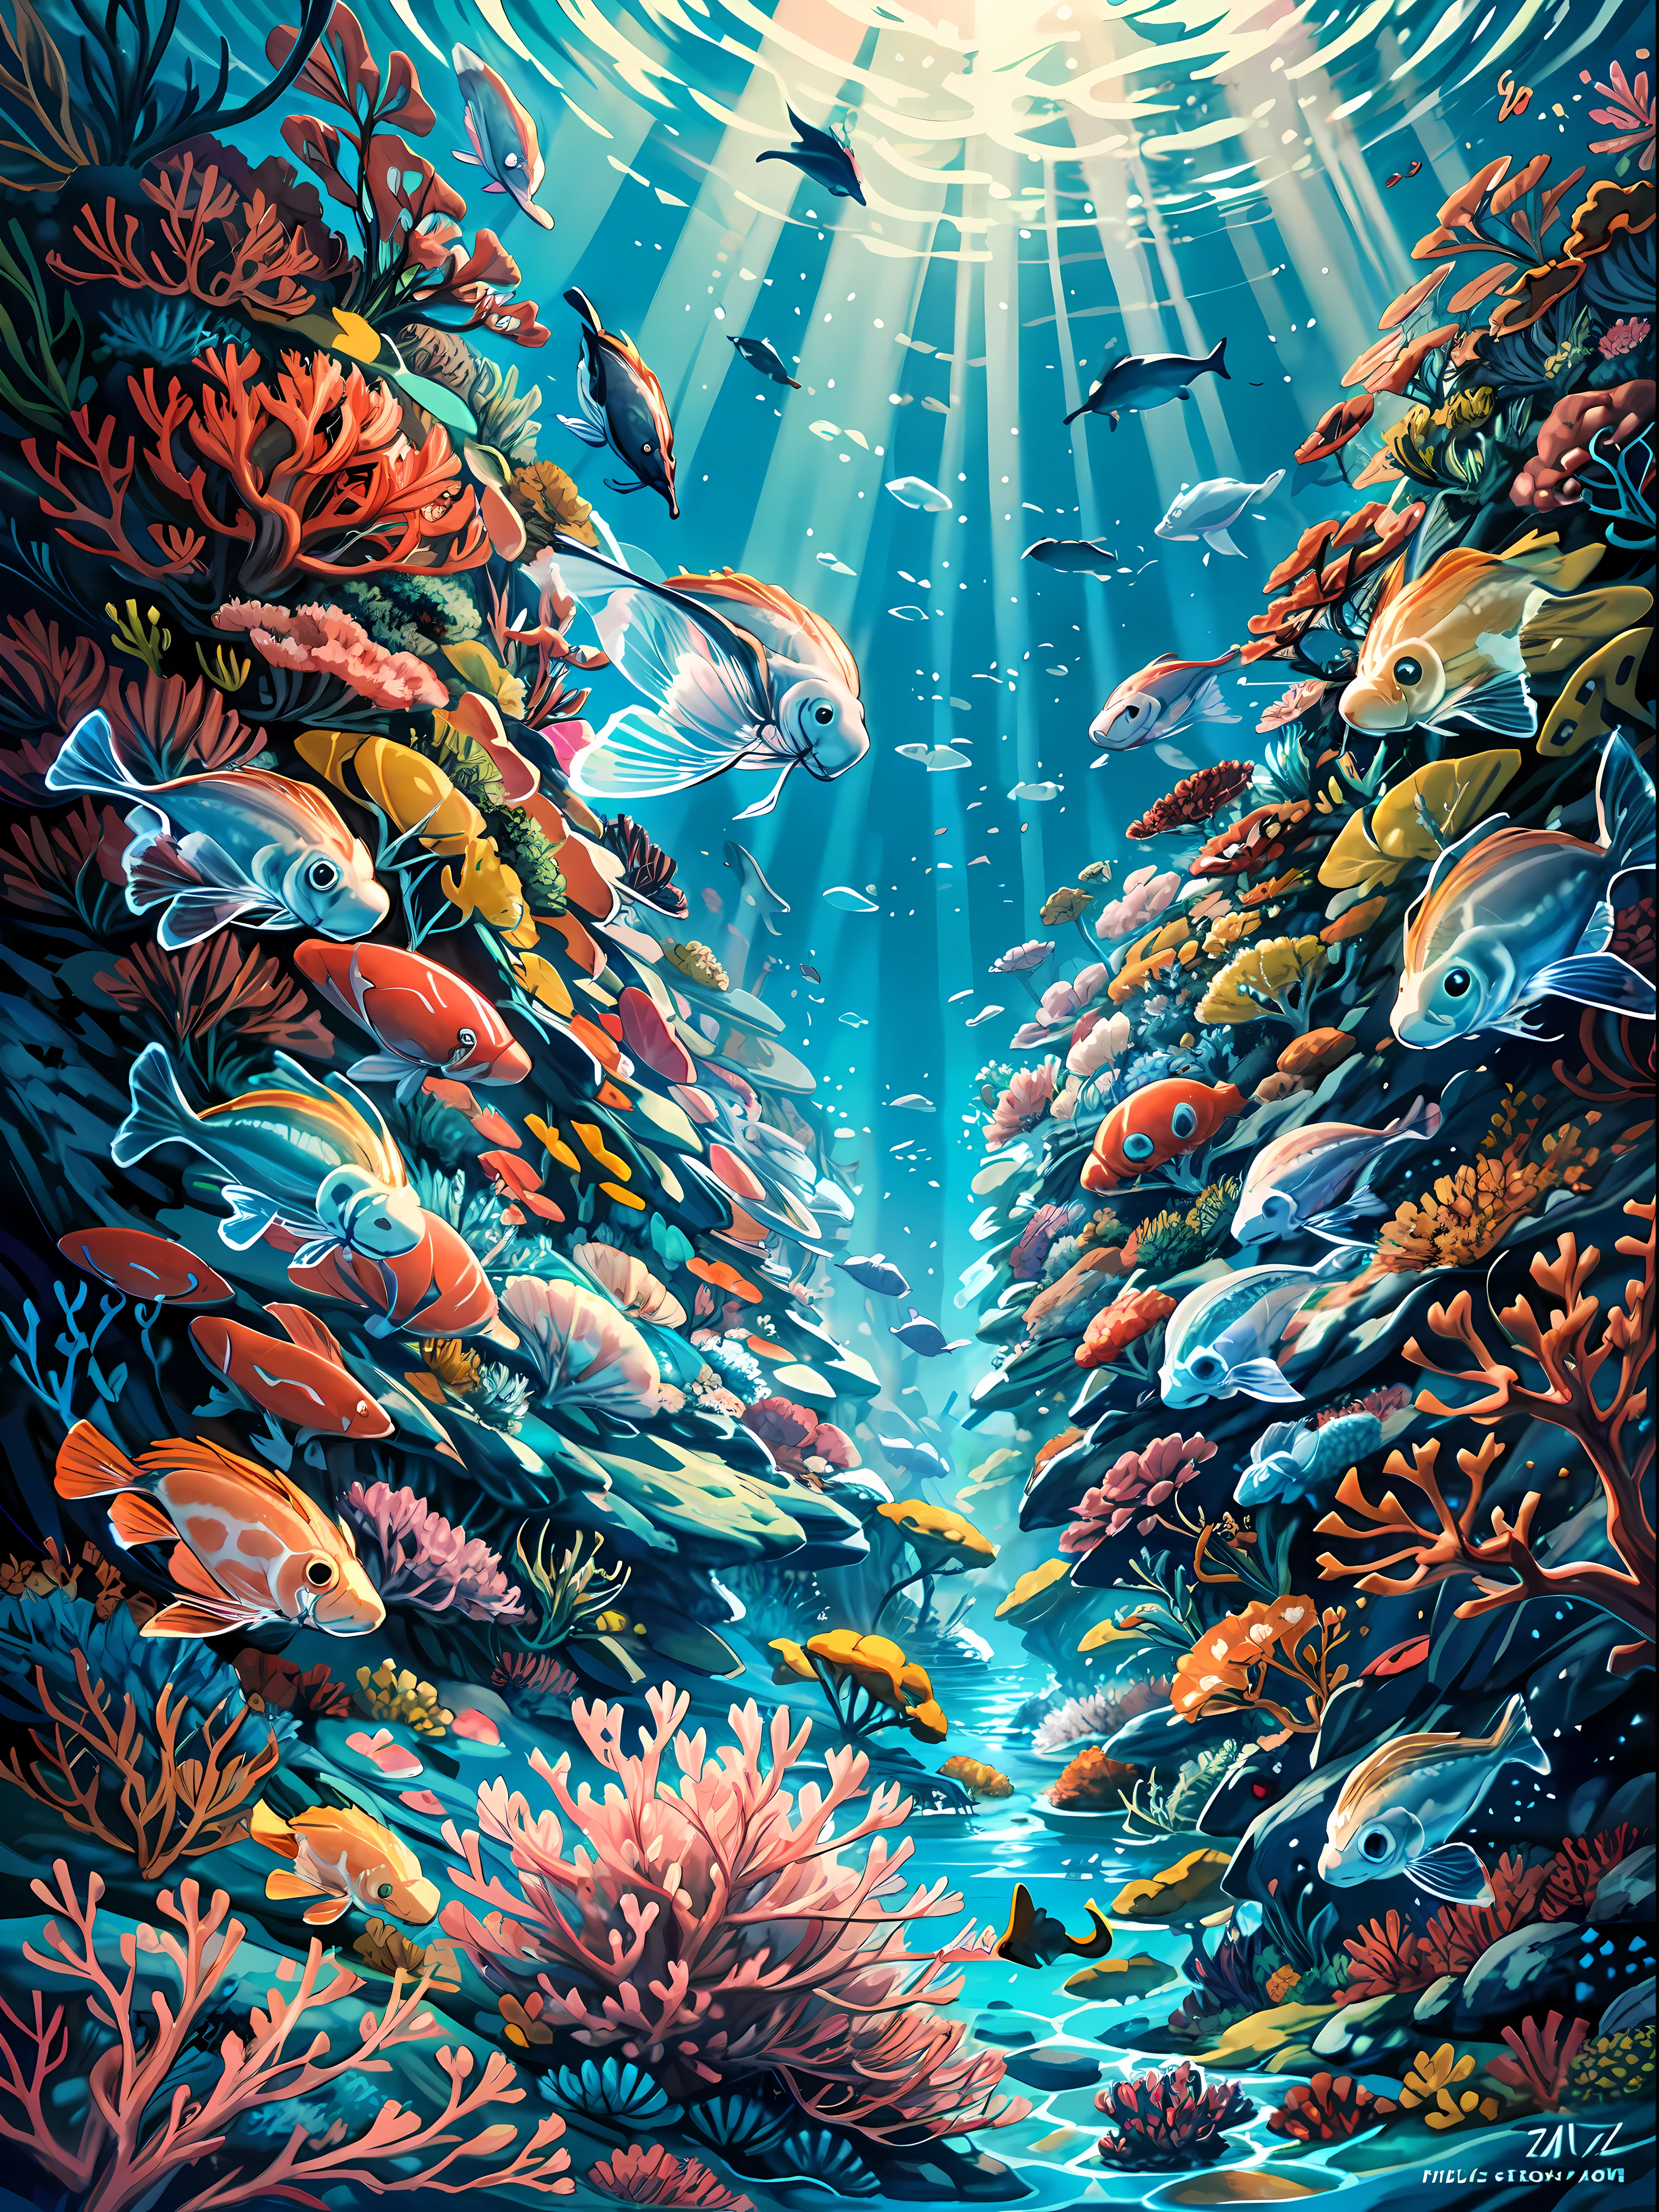 画像は、魅惑的に美しいシュールで別世界の水中風景を捉えています, 画像の前景は広大な, 色鮮やかなサンゴ礁, さまざまなサンゴ種が明るく鮮やかな色のタペストリーを作成します 休憩 無数の小魚と大型の魚がサンゴに出入りします, 画像に生命感と動きを加える. このイメージを他と一線を画すもの, しかし, クラゲは. これらの空気のような生き物は、まるで空中を浮かんでいるように見える方法で捕獲されています, 彼らの後ろに続く彼らの長い触手, まるで繊細なバレリーナのグループであるかのように 休憩 クラゲも内側から照らされます, 画像全体に放射状に広がるような別世界の輝きを生み出す. 画像の全体的な効果は、夢のようなシュールな水中世界の1つです, 自然の美しさが忘れられないほど穏やかで壮大であるところ.